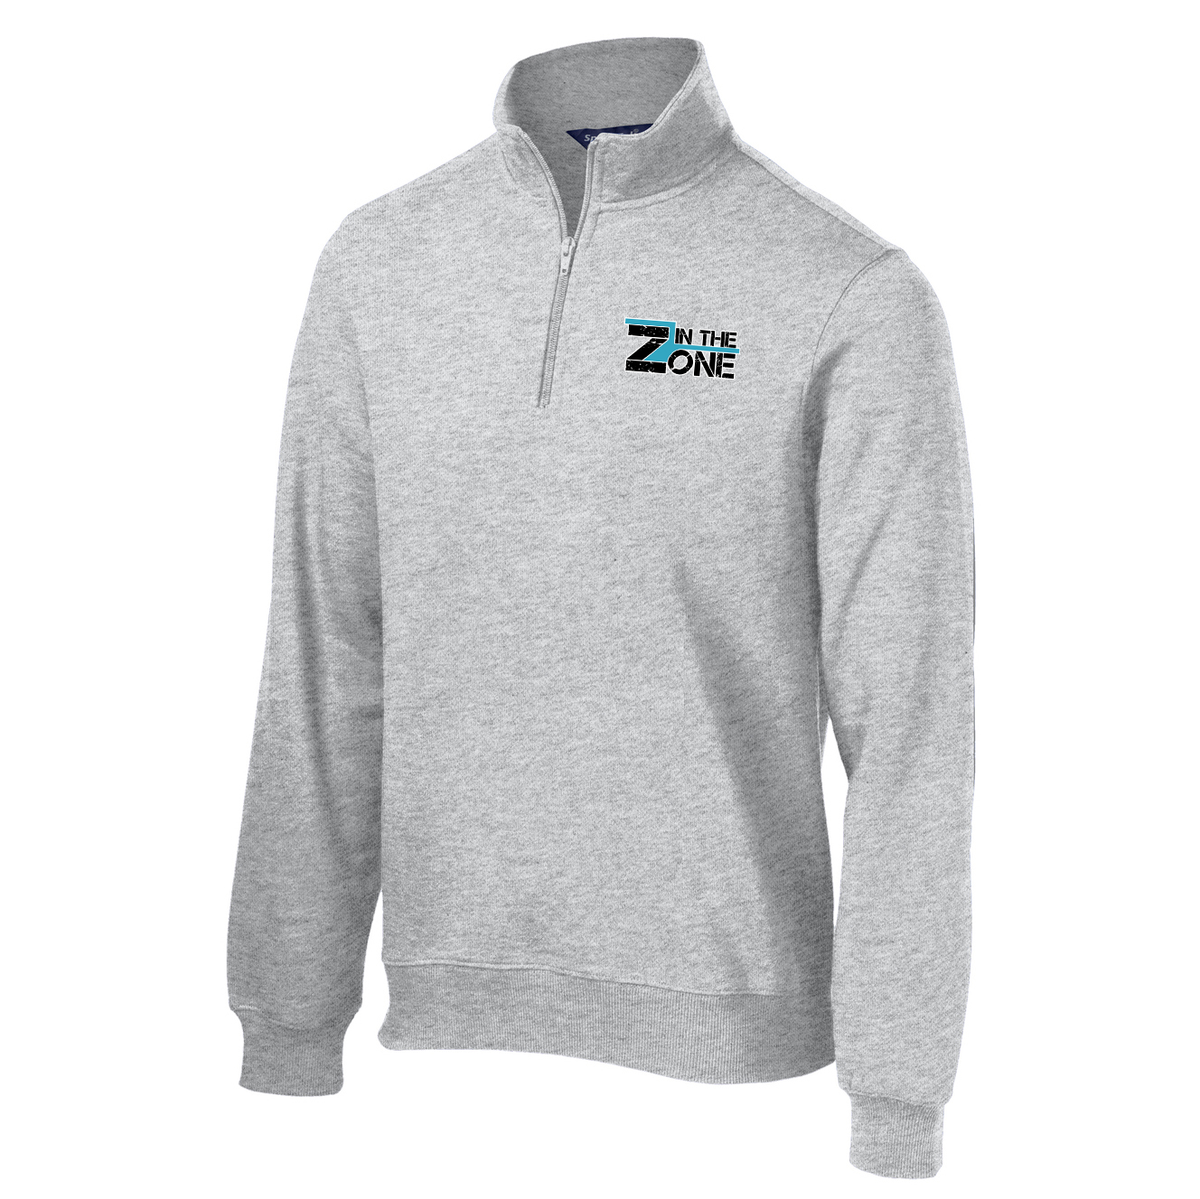 The Zone 1/4 Zip Fleece